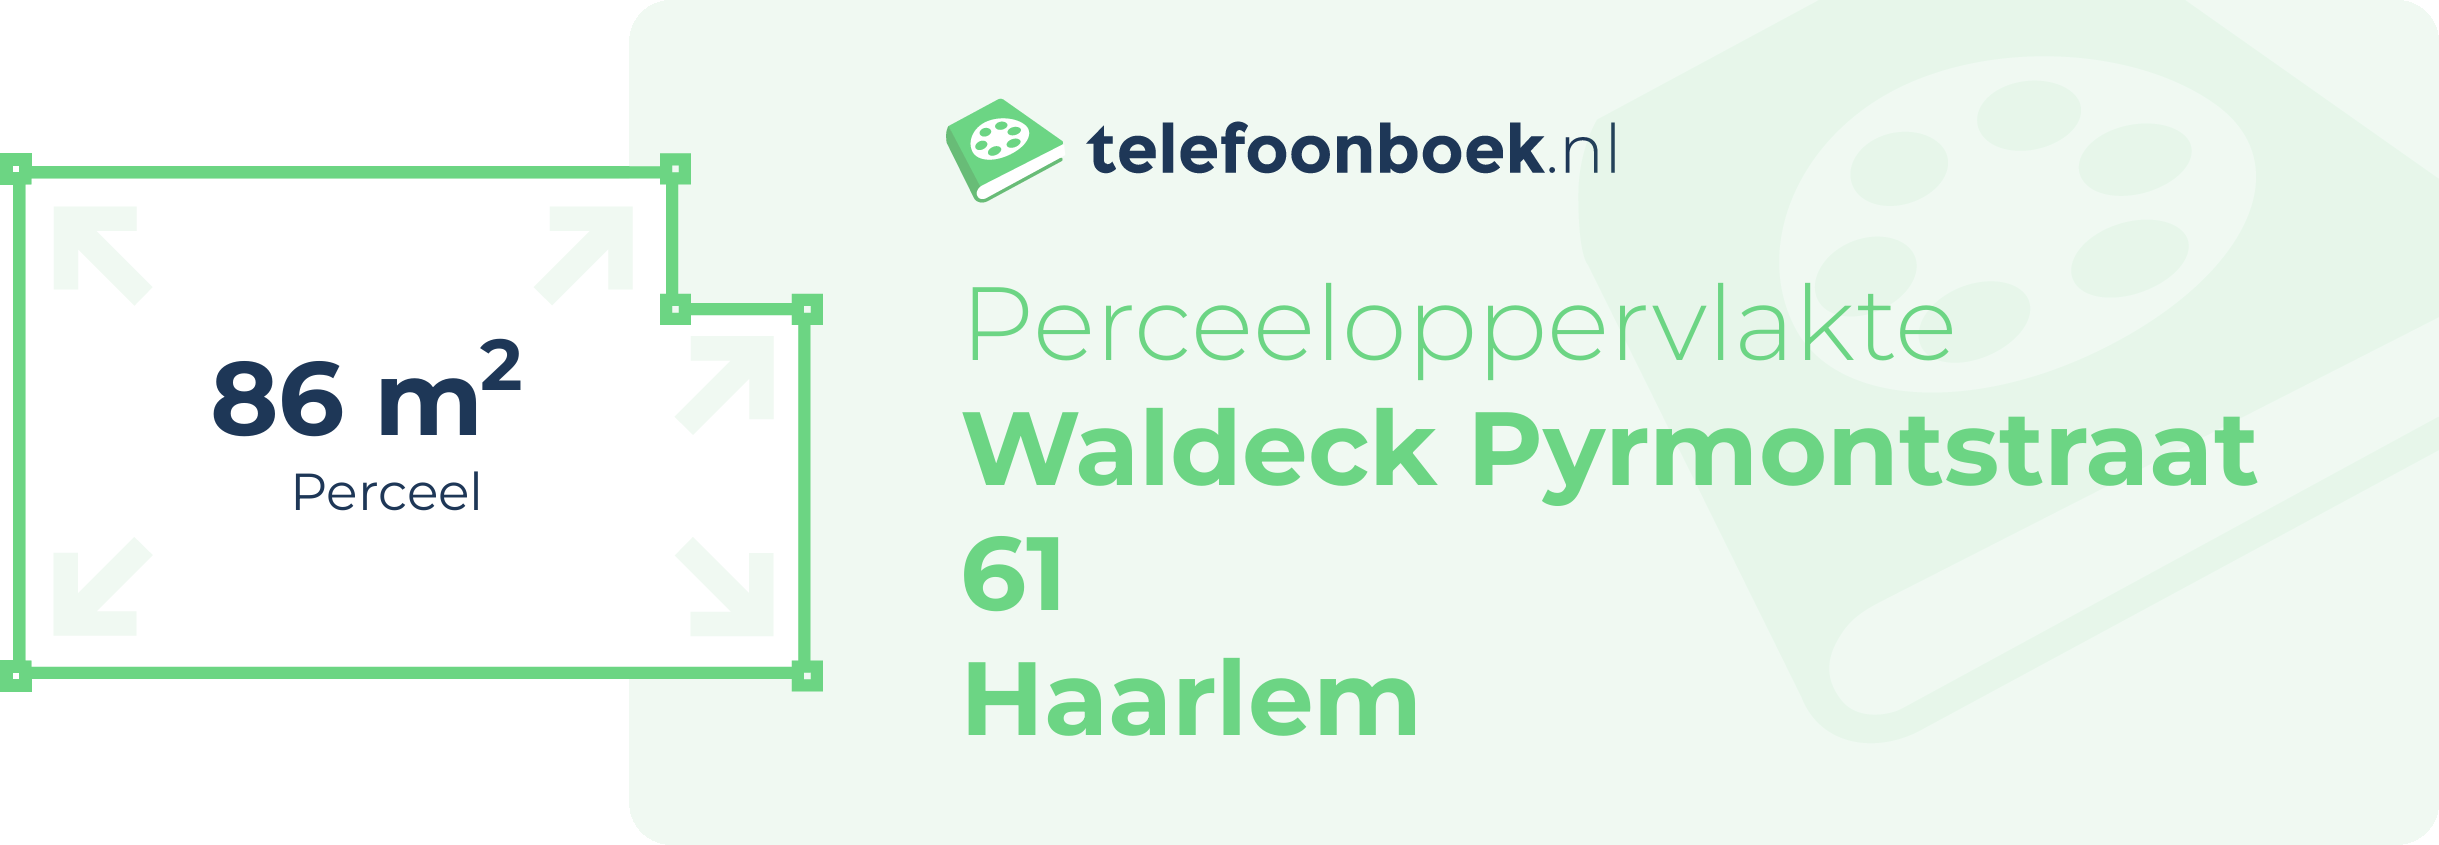 Perceeloppervlakte Waldeck Pyrmontstraat 61 Haarlem